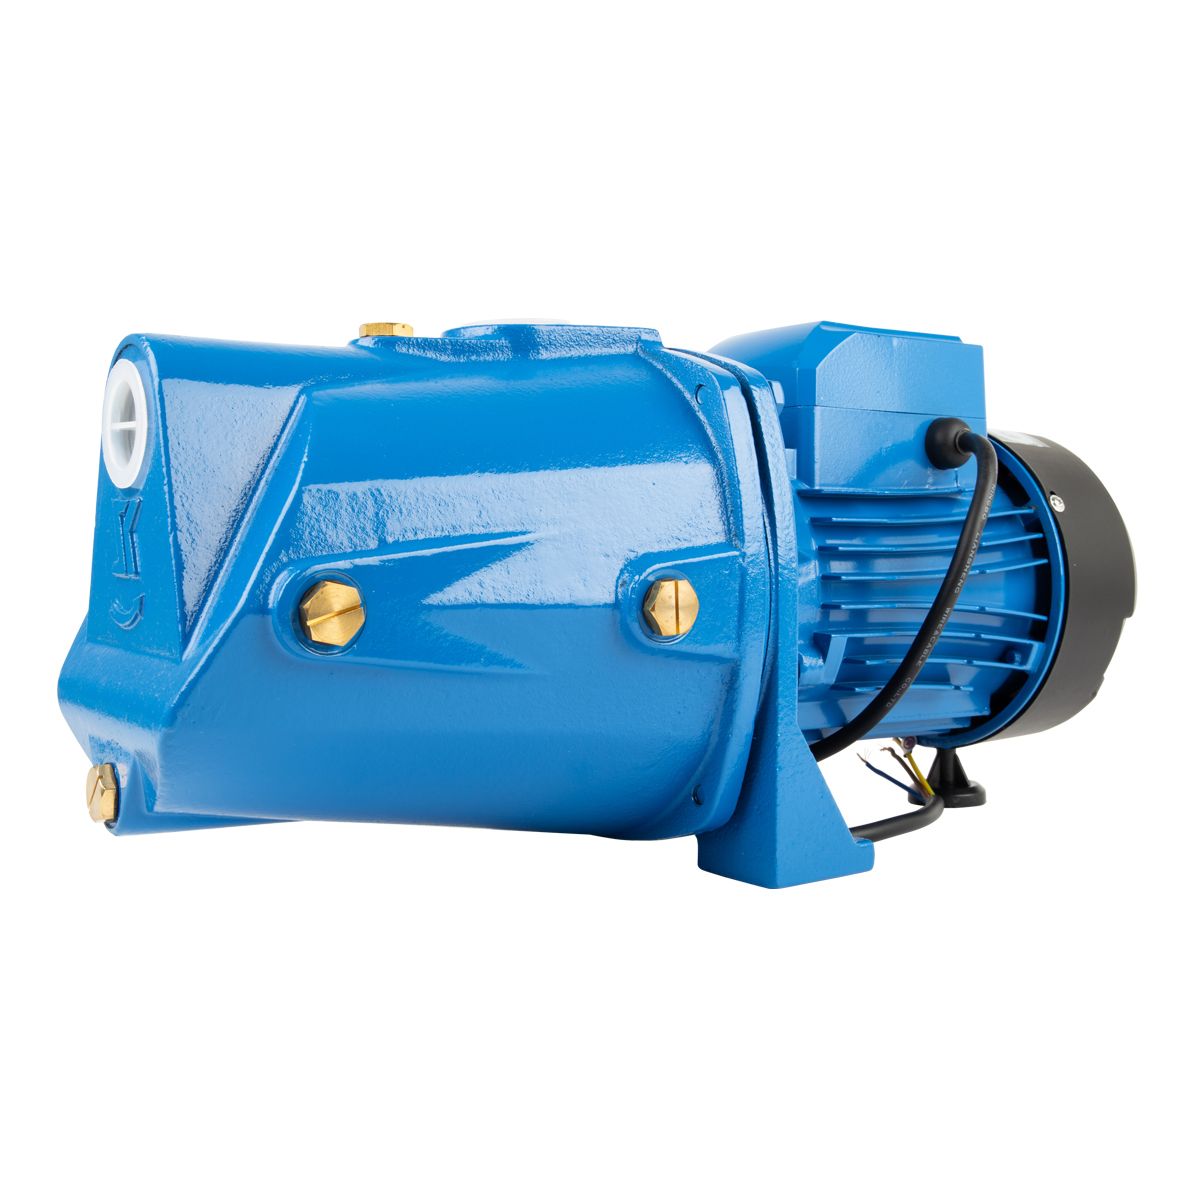 Mechanical Seals for Pressure Pump Jet Self Priming 0.75kw-Sprinkler, Booster & Irrigation System Pumps-Pascali-diyshop.co.za